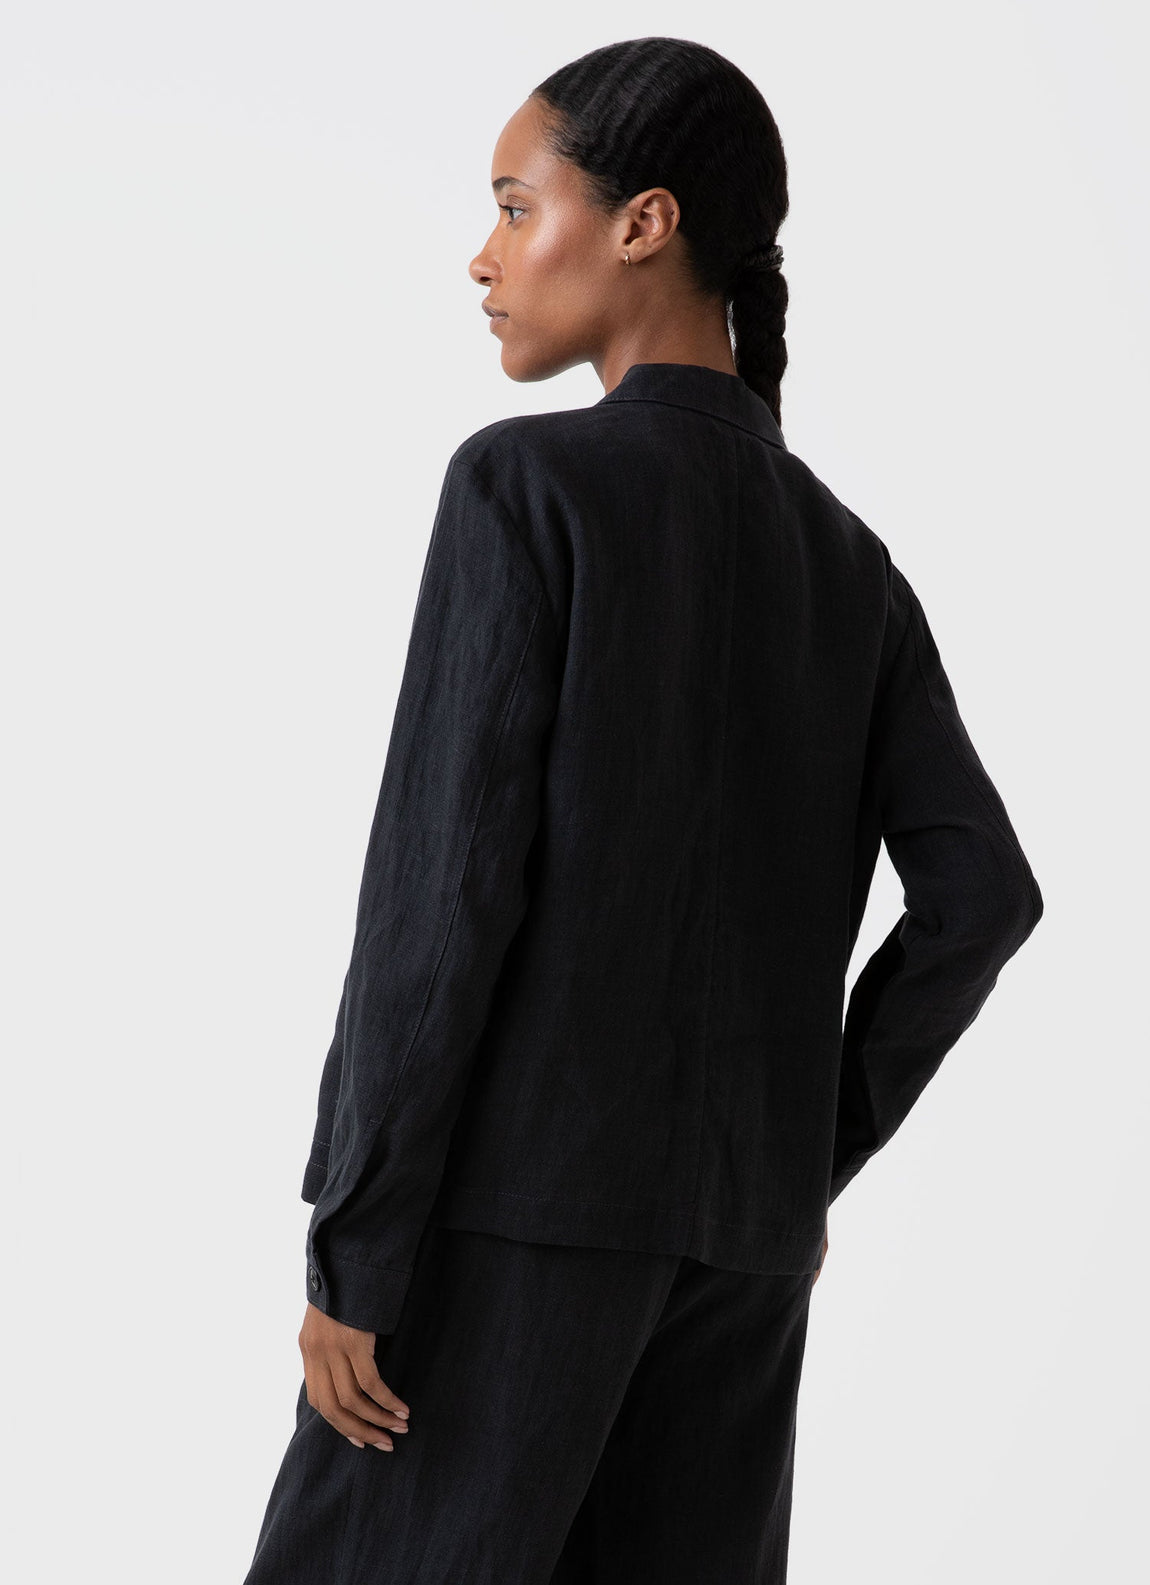 Women's Linen Twin Pocket Jacket in Black